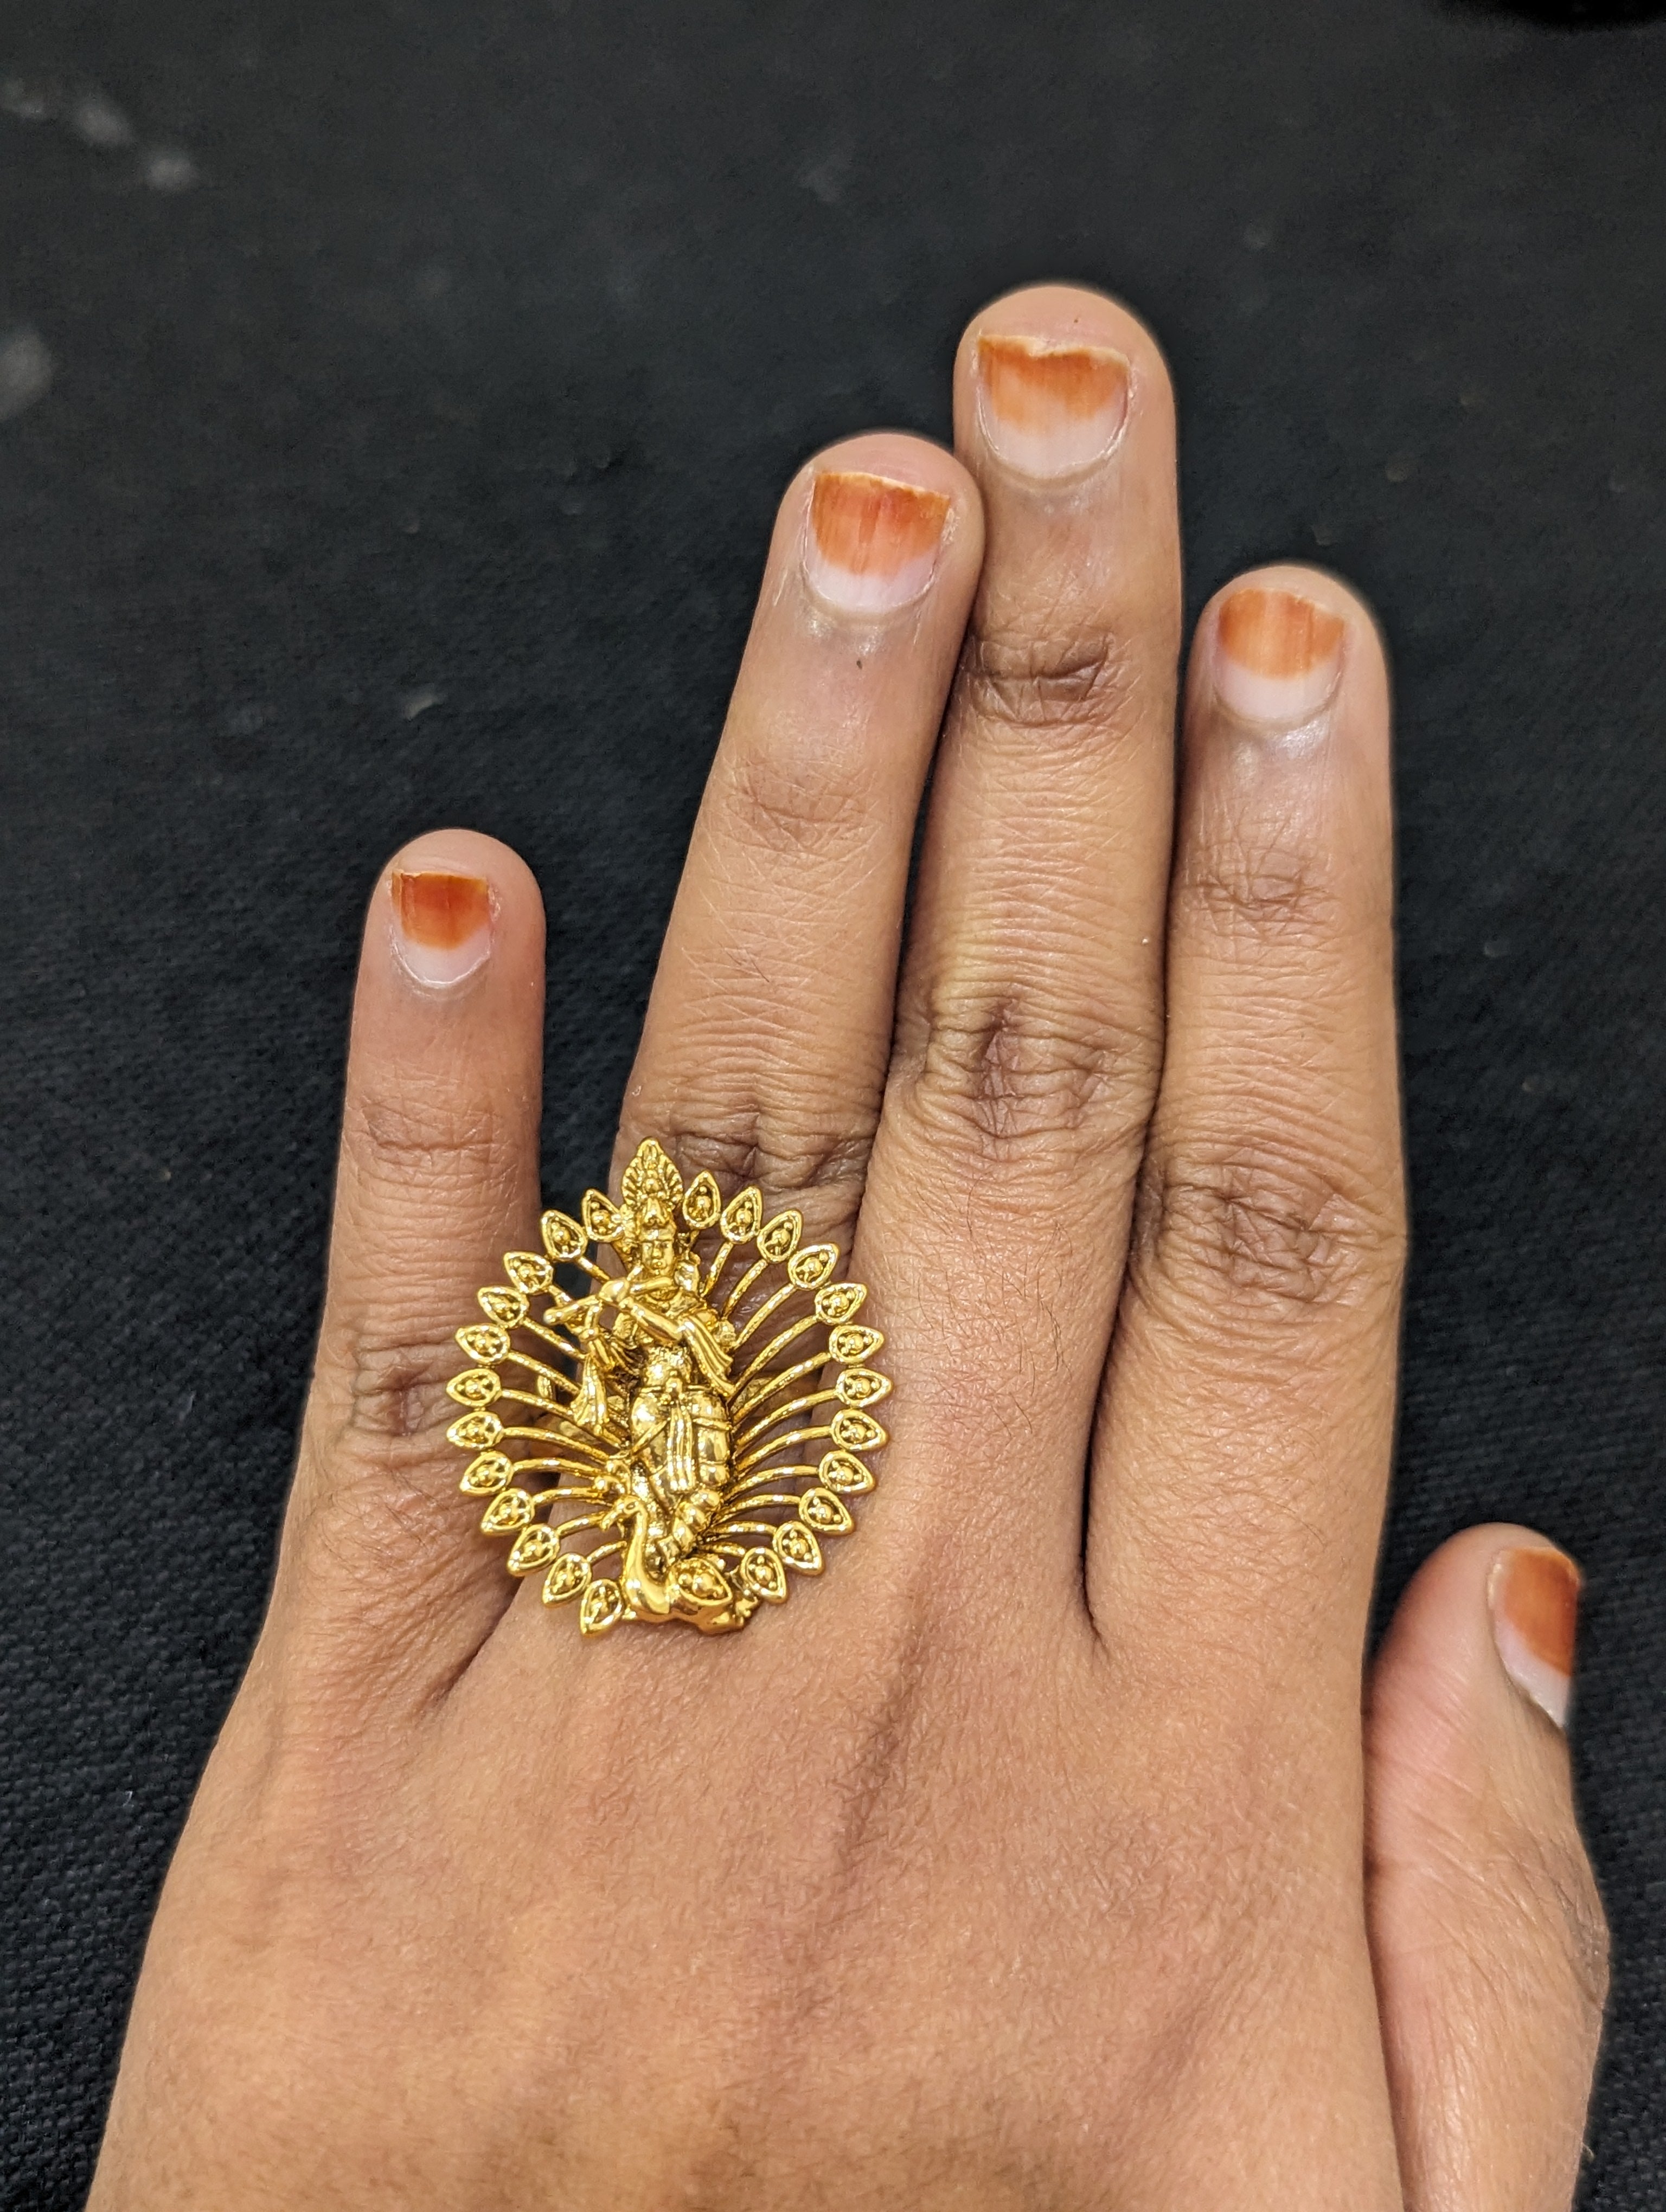 9 Stunning Designs of Full Finger Rings For Men and Women